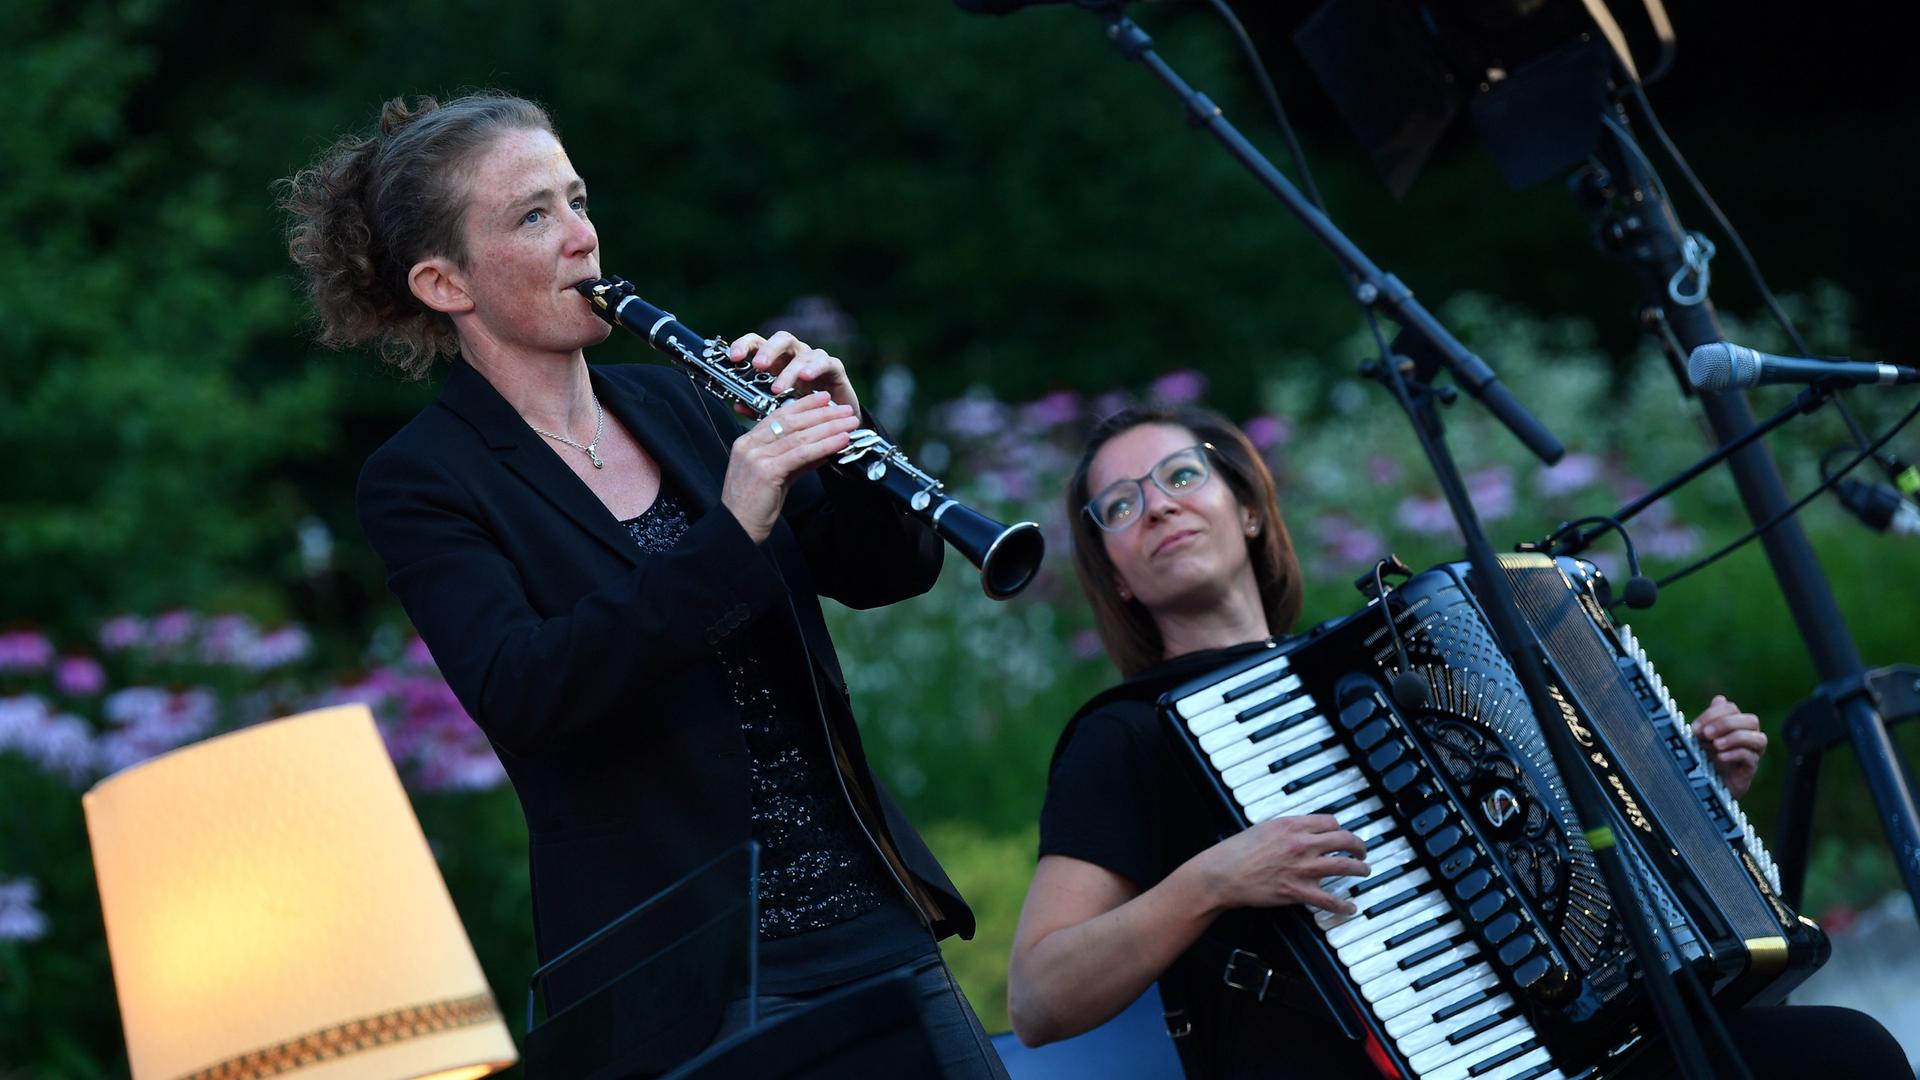 Klarinettistin Susi Evans (l.) und die Akkordeonistin Szilvia Csaranko spielen zur Eröffnung des OpenAir Yiddish Summer im Juli 2020.